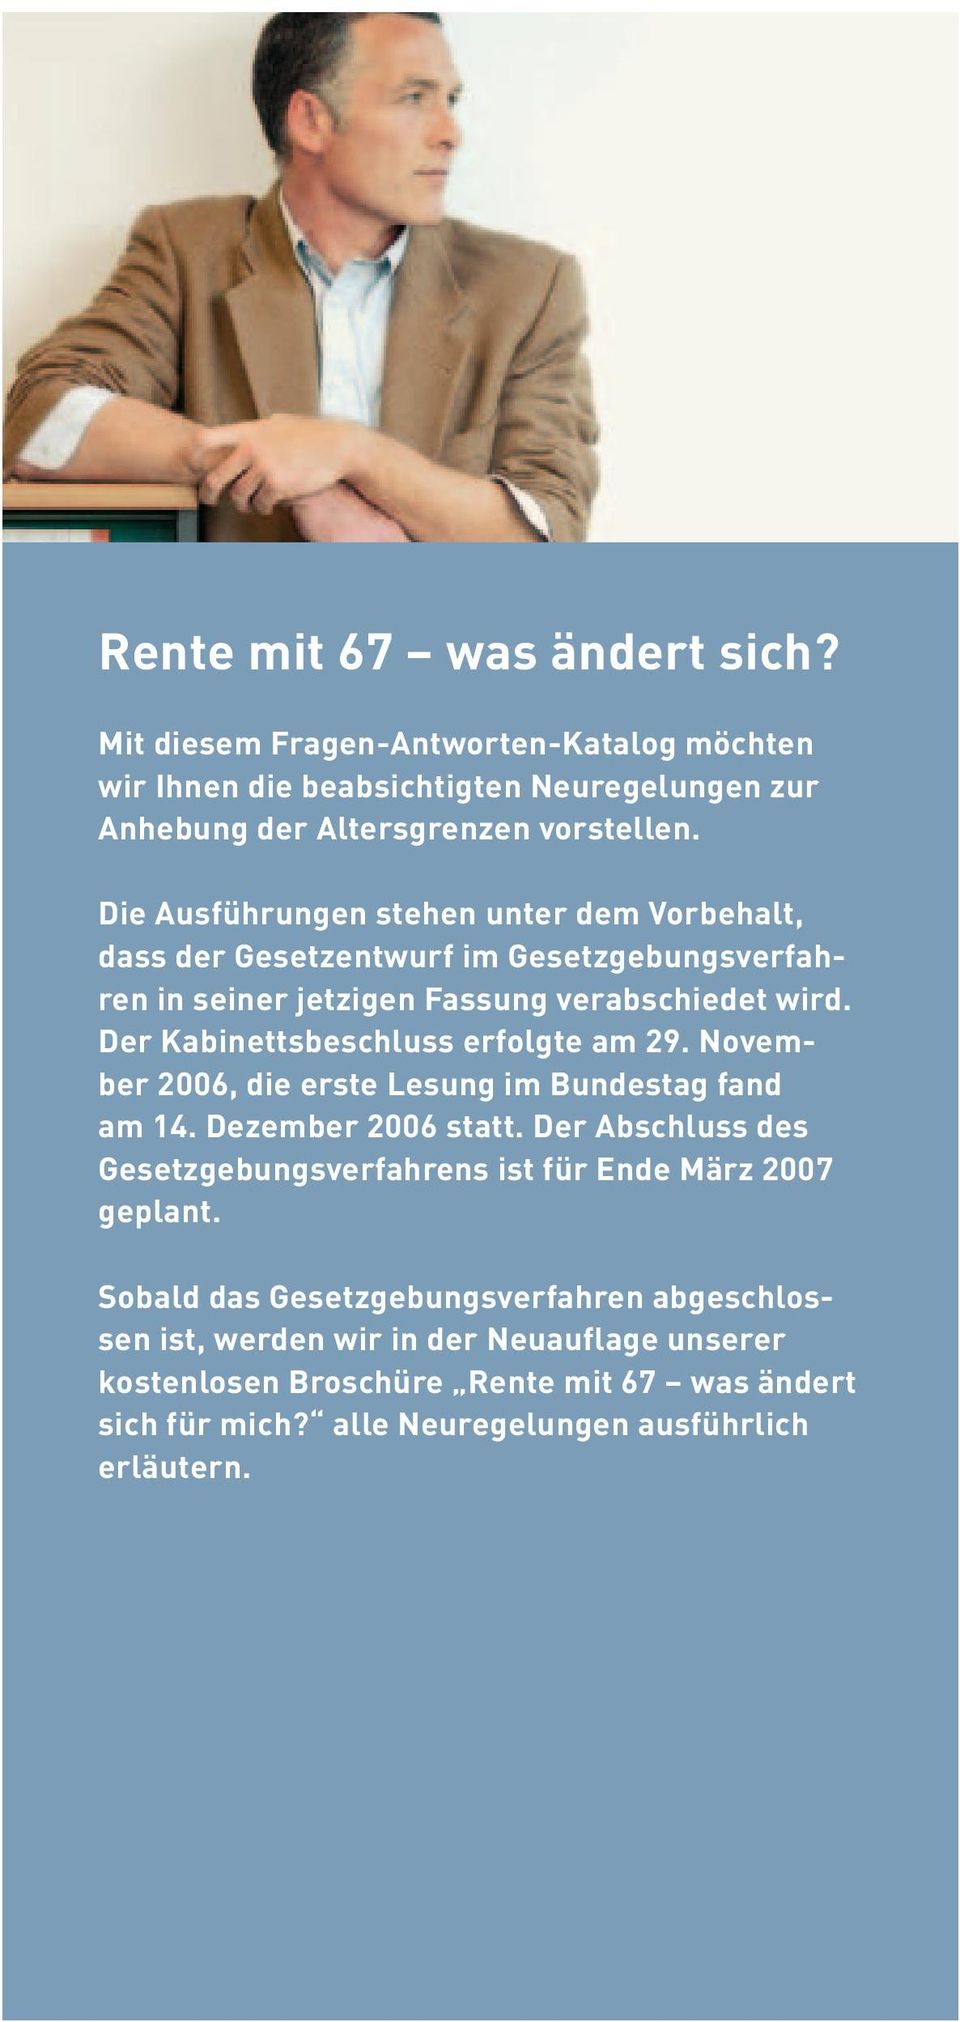 November 2006, die erste Lesung im Bundestag fand am 14. Dezember 2006 statt. Der Abschluss des Gesetzgebungsverfahrens ist für Ende März 2007 geplant.